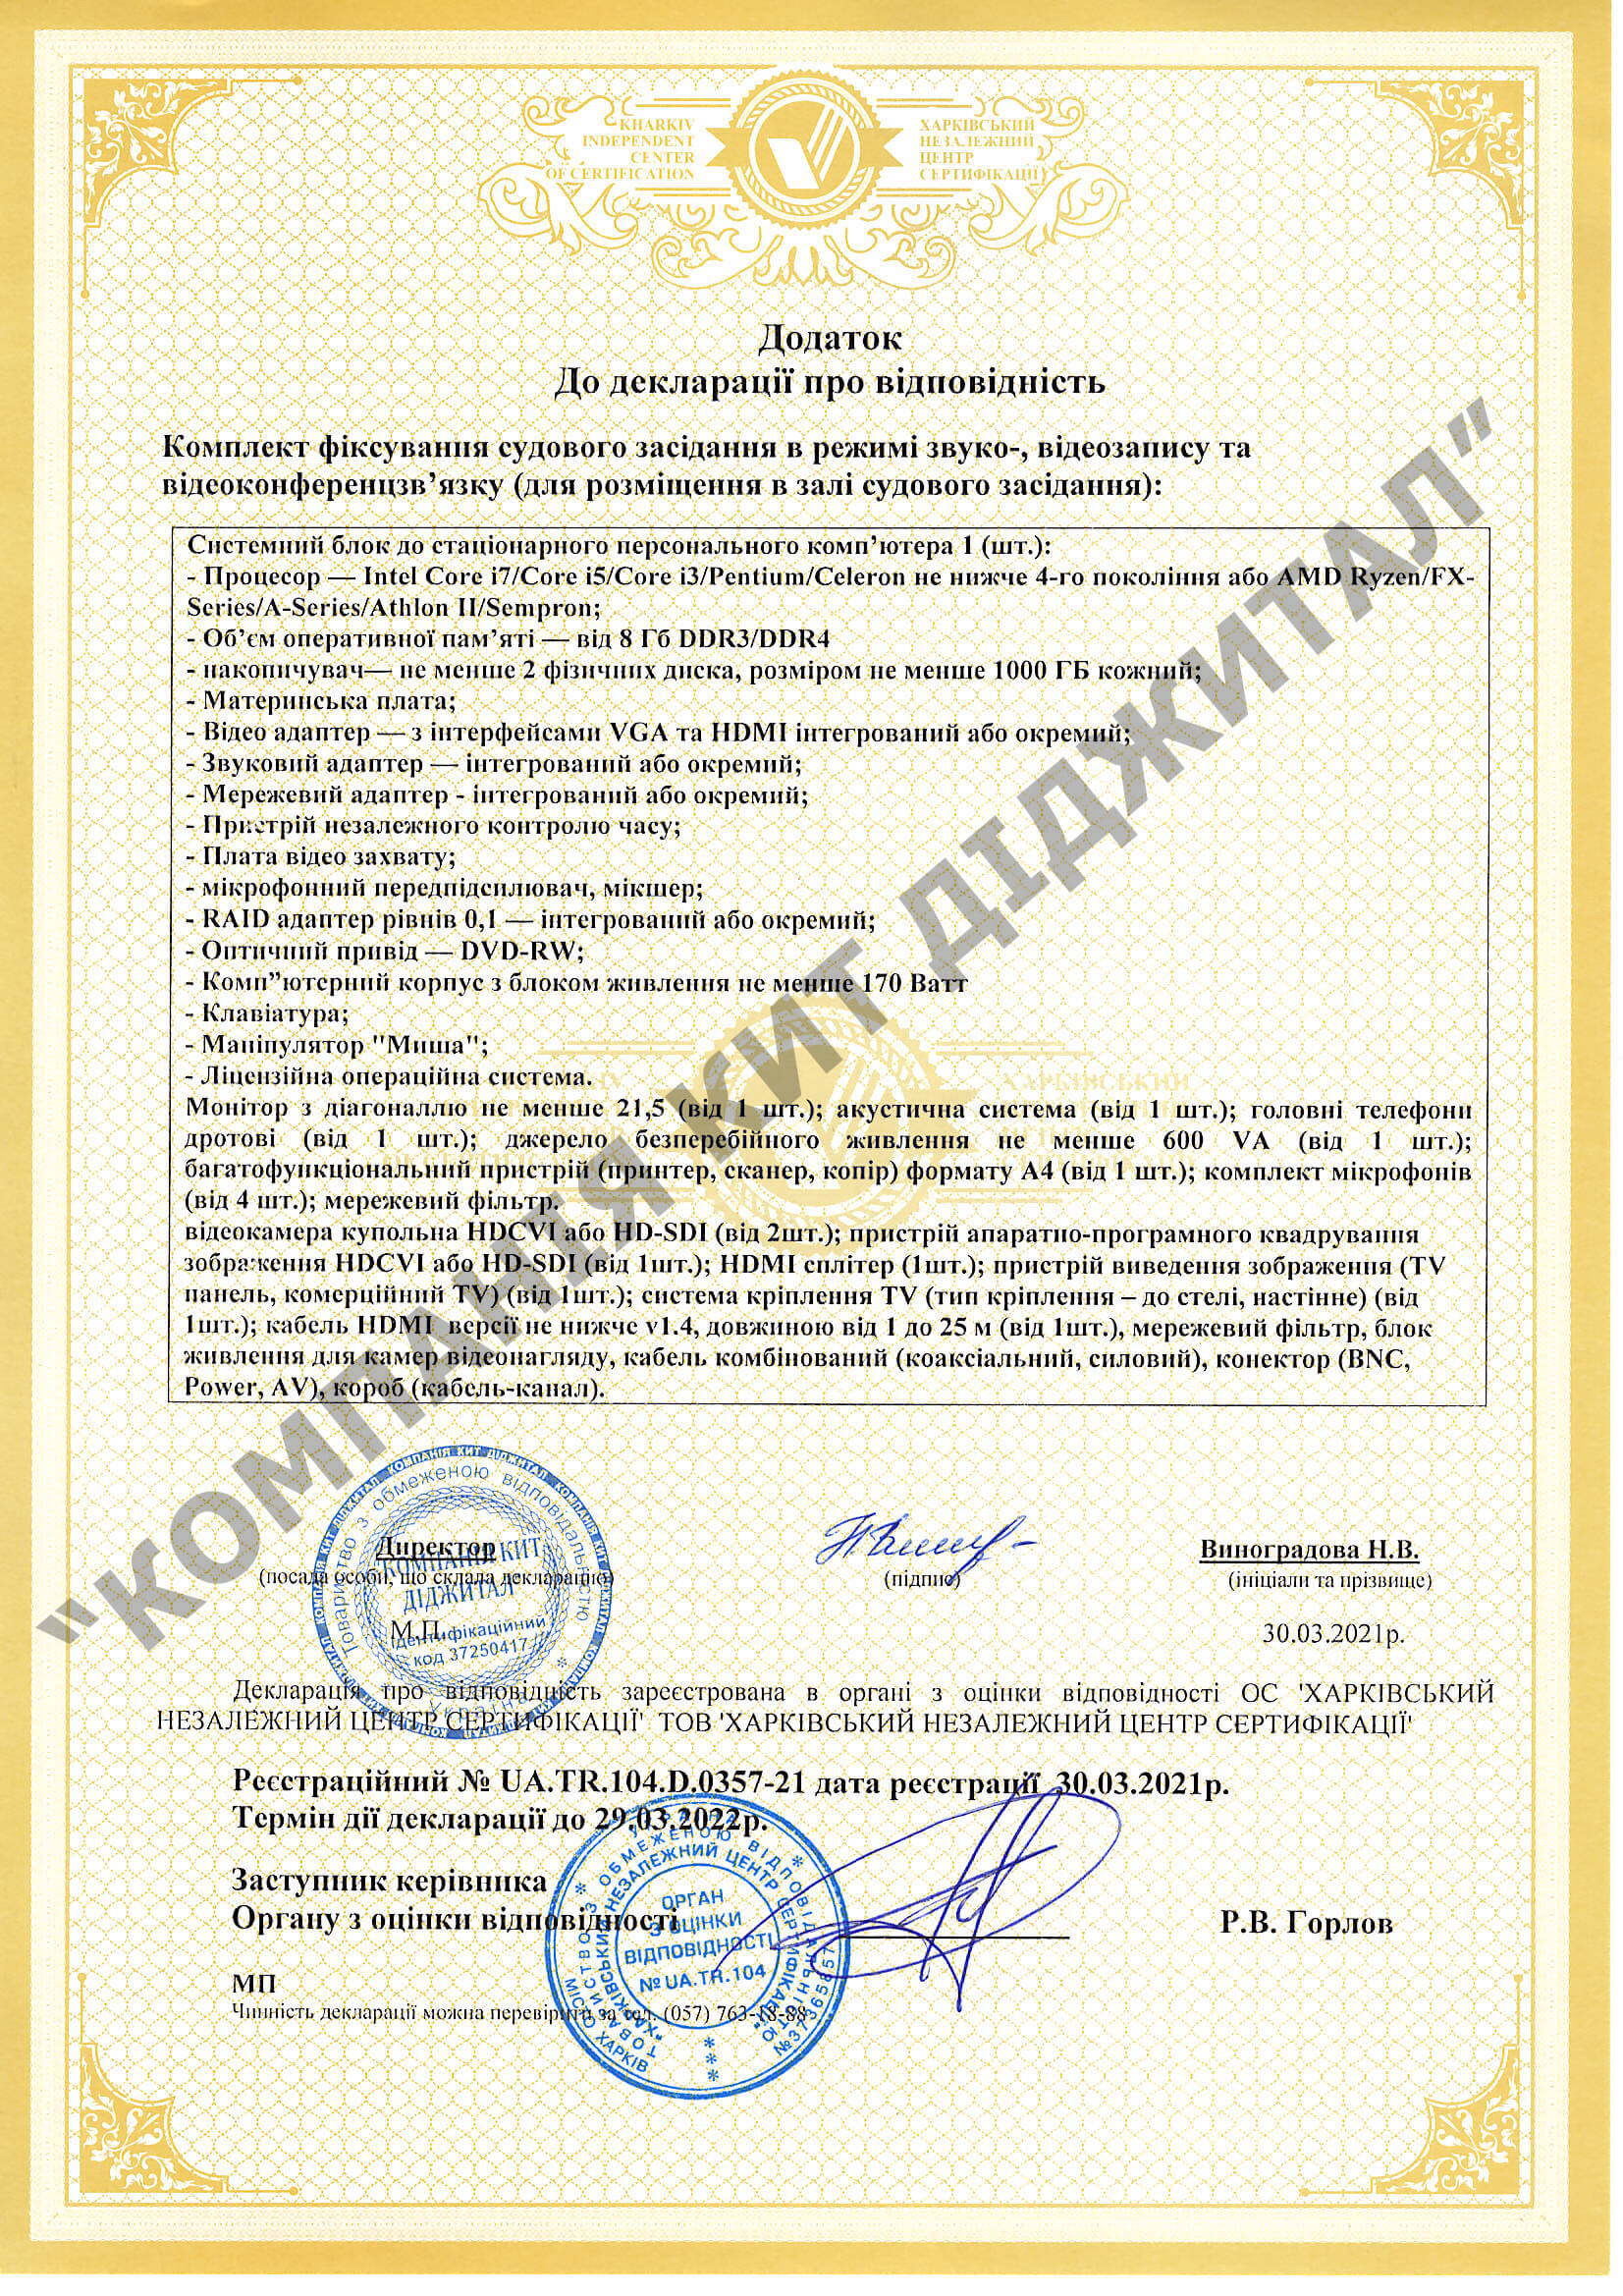 Сертифікат відповідностіПрограмно апаратний комплекс ТЗФСП